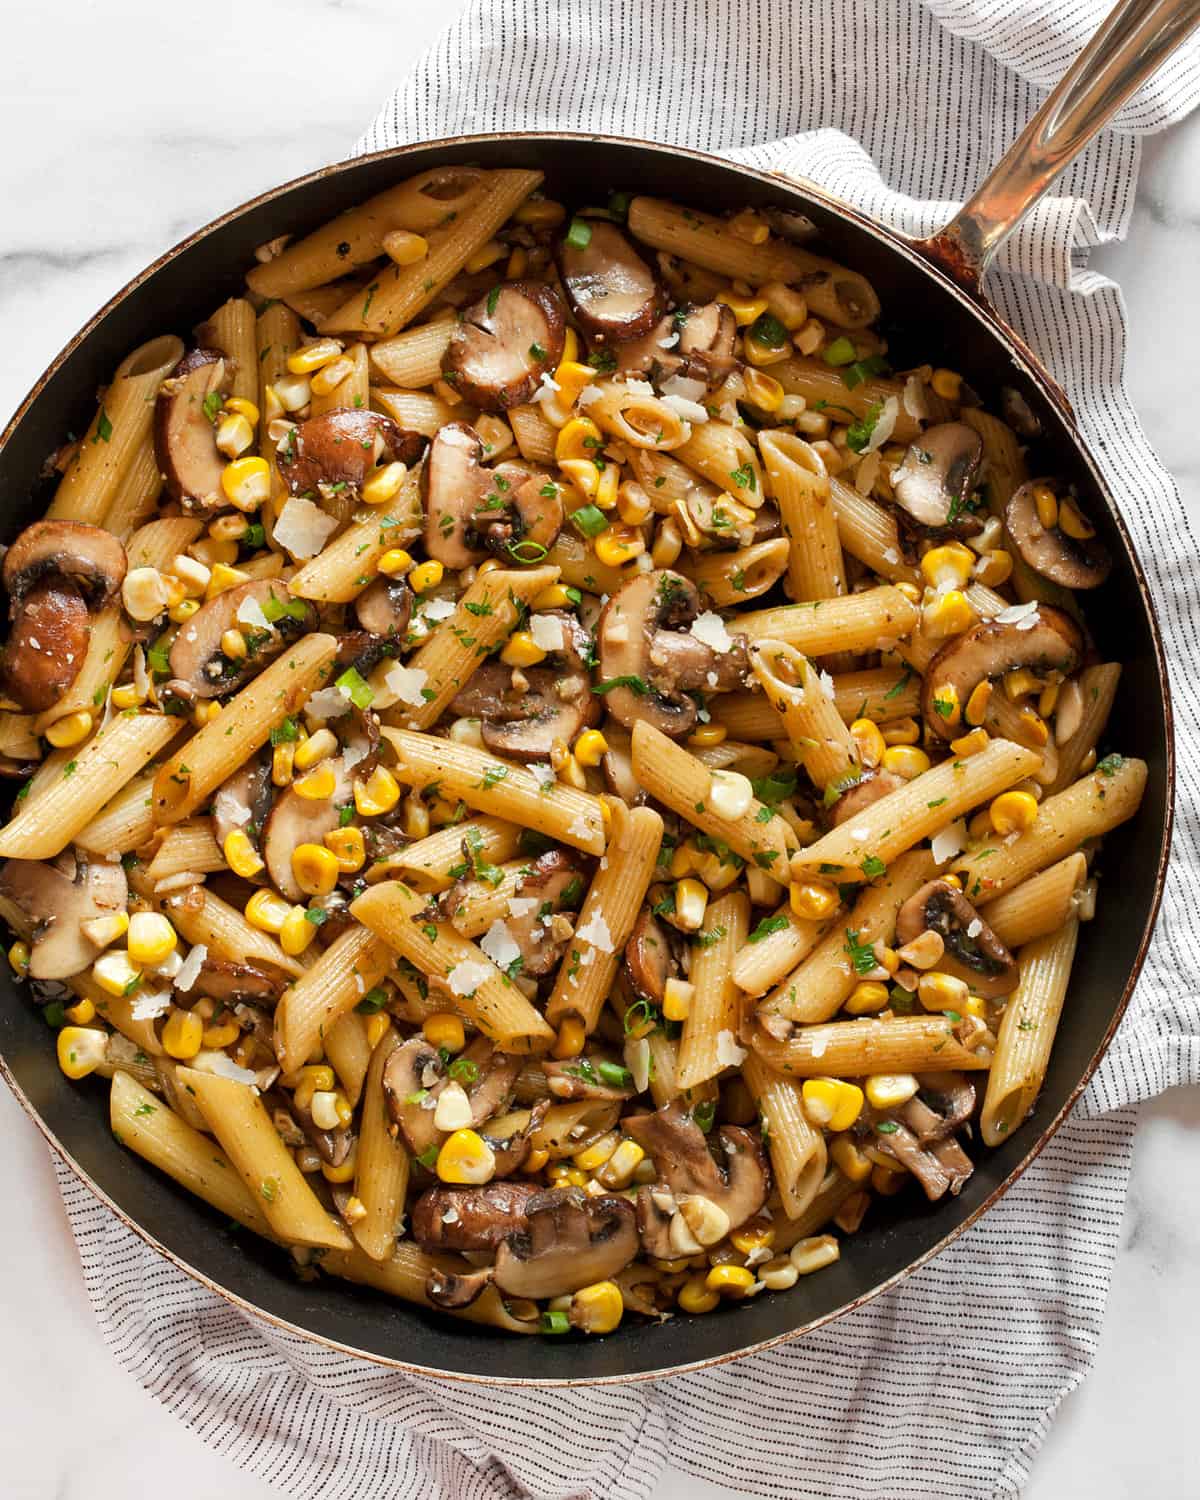 Mushroom corn pasta in a skillet.